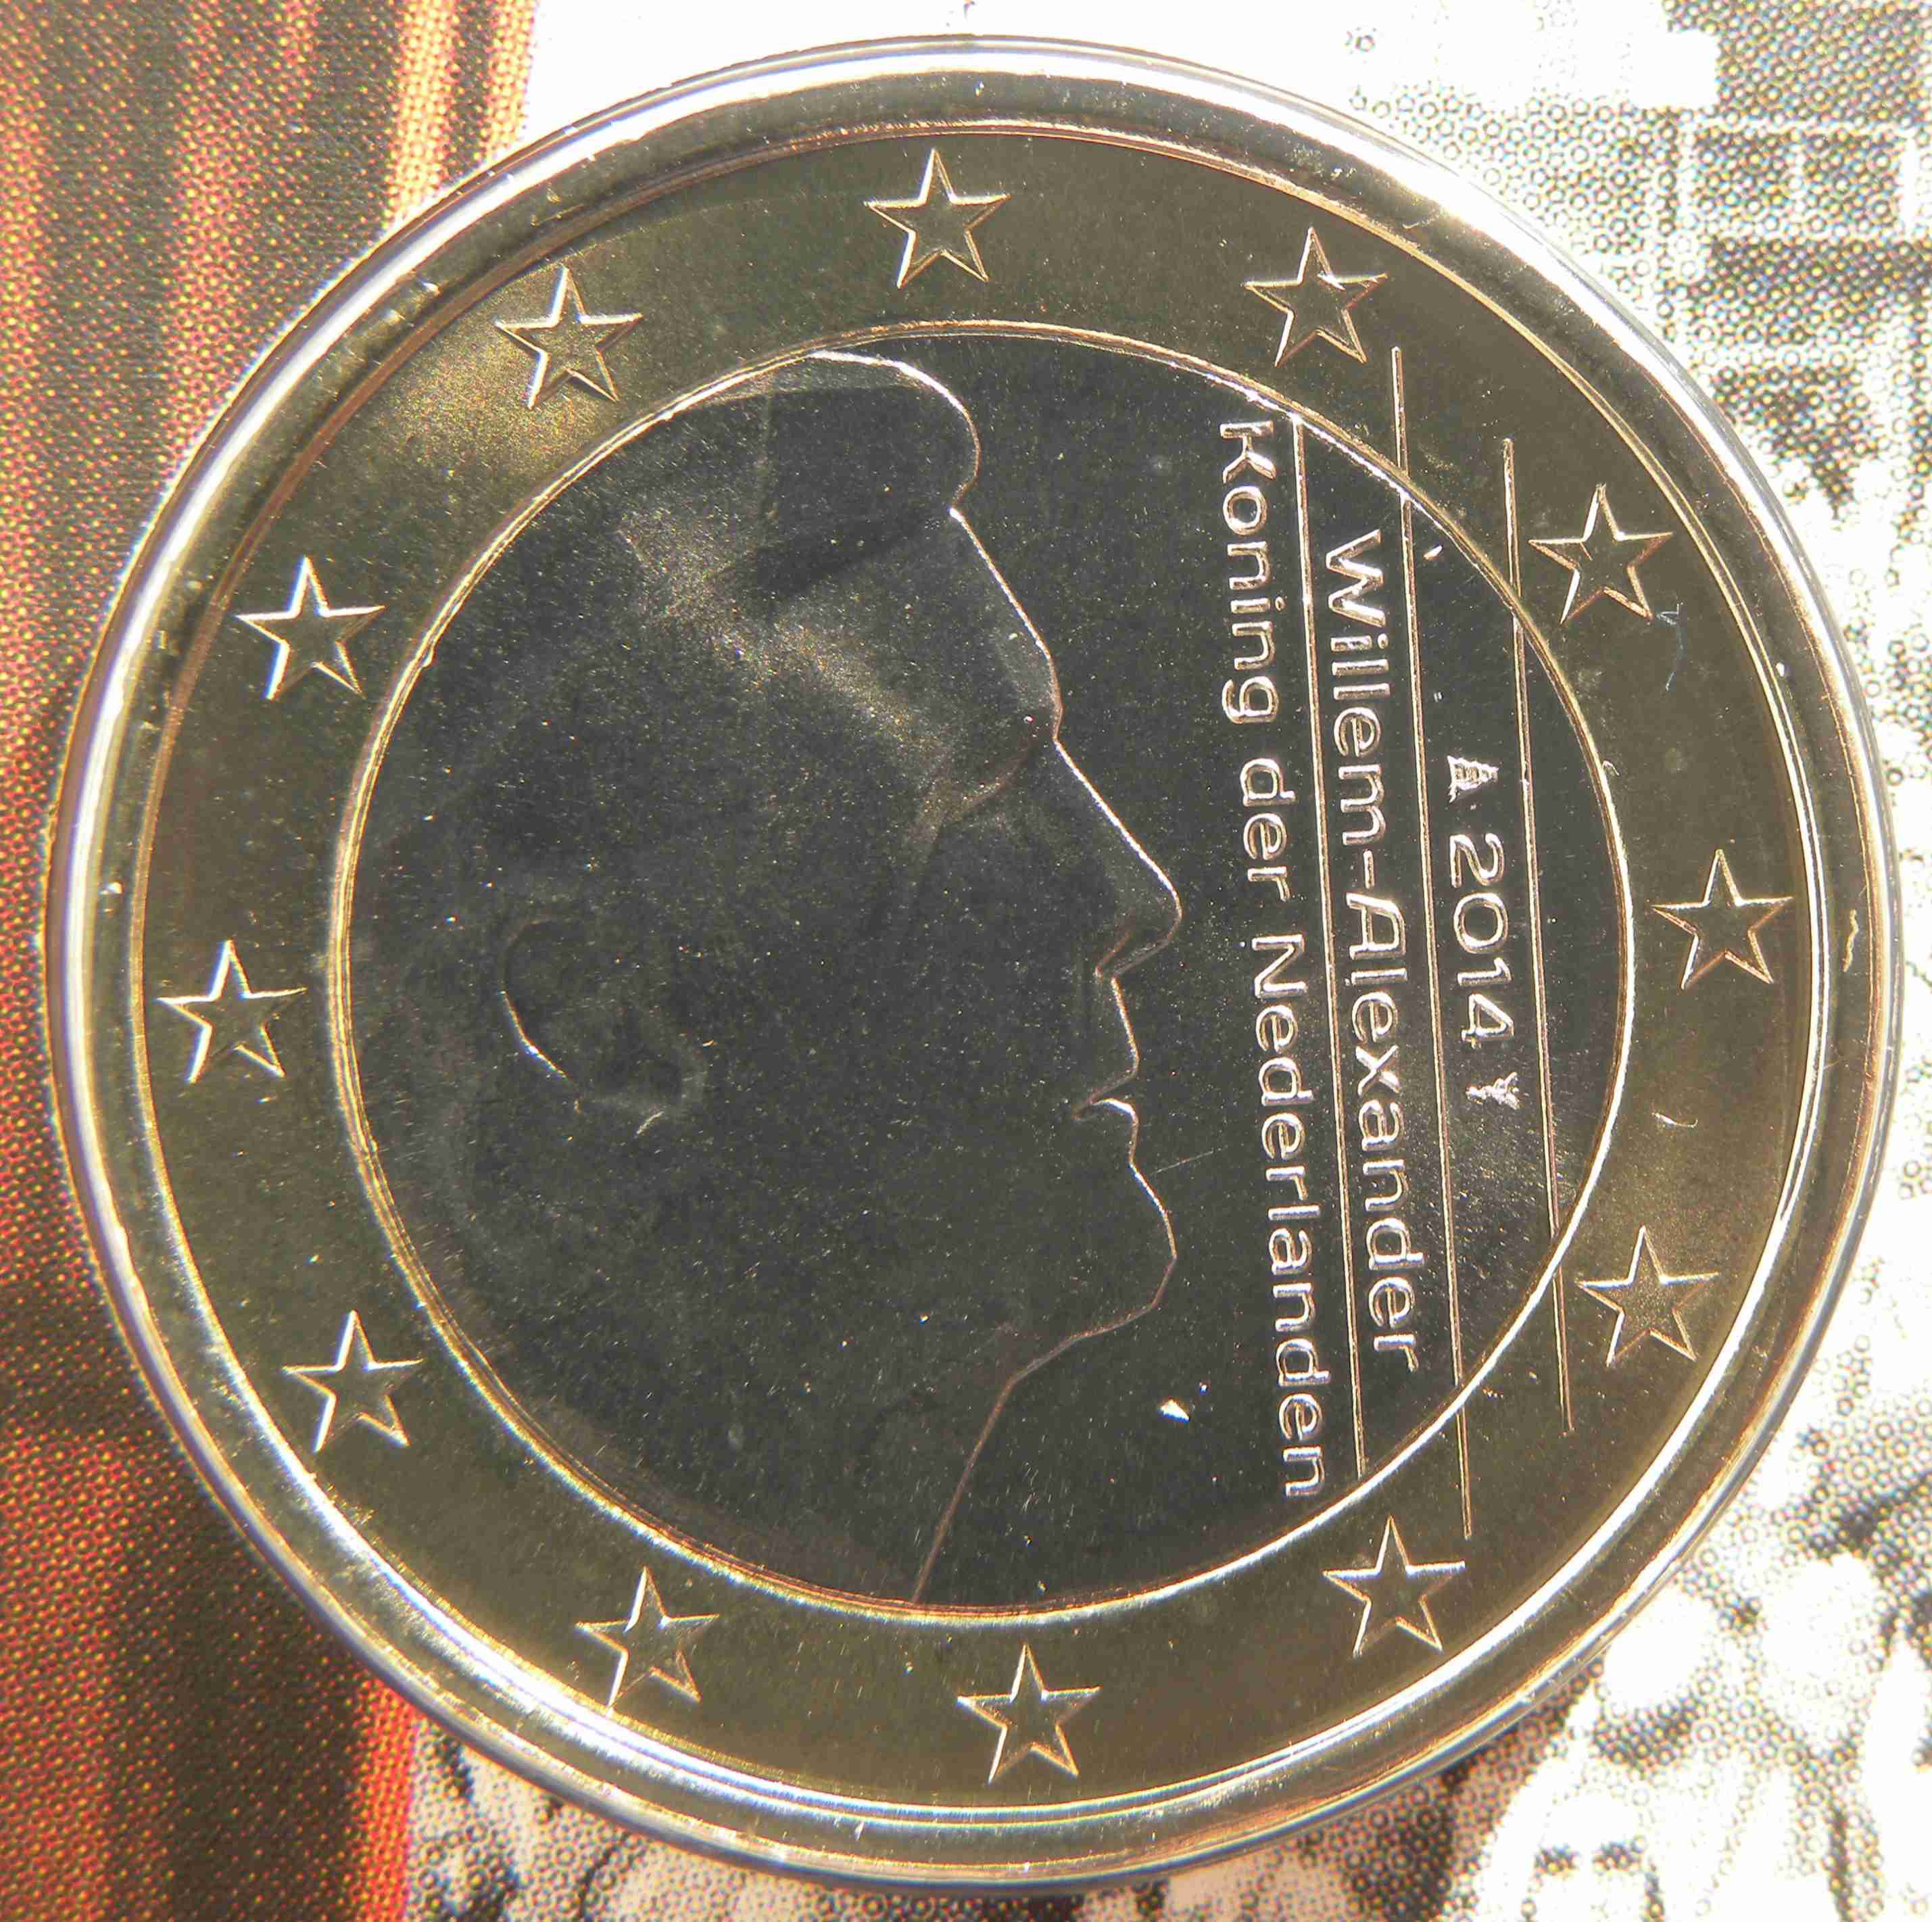 Niederlande 1 Euro Münze 2014 - euro-muenzen.tv - Der Online Euromünzen